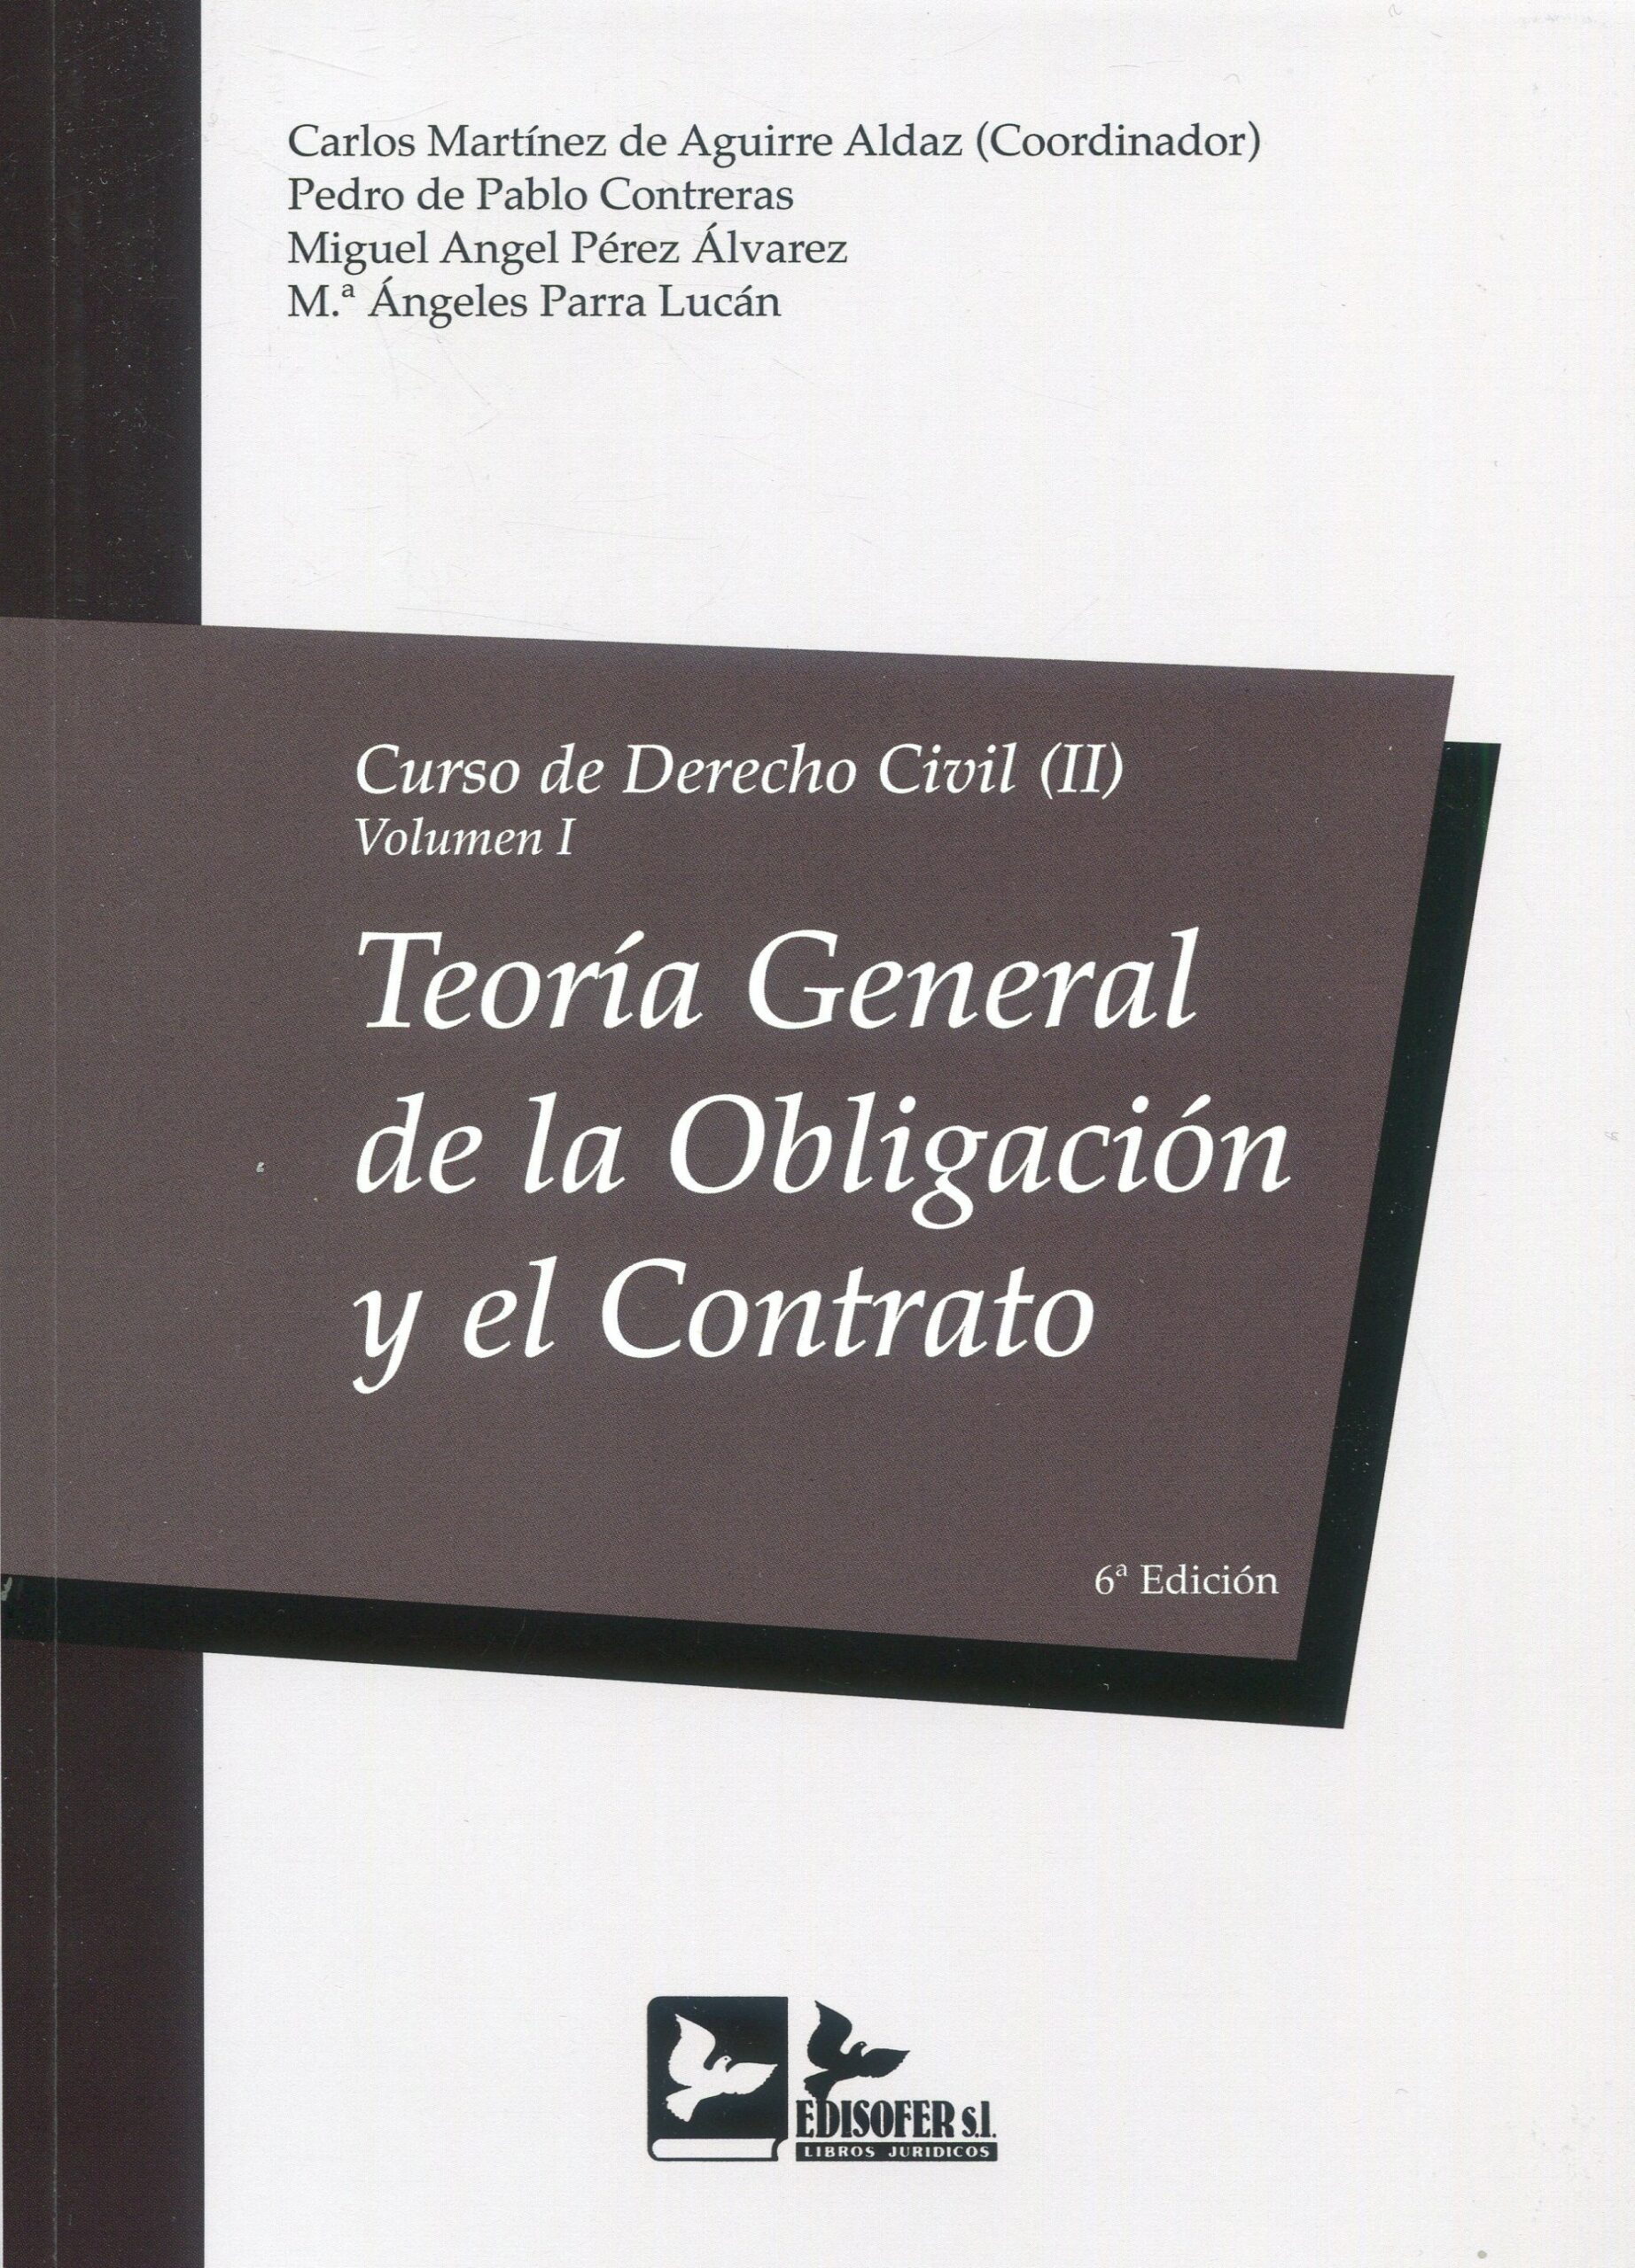 Imagen de portada del libro Curso de Derecho Civil. Tomo II, Derecho de obligaciones. Vol. I, Teoría general de la obligación y el contrato